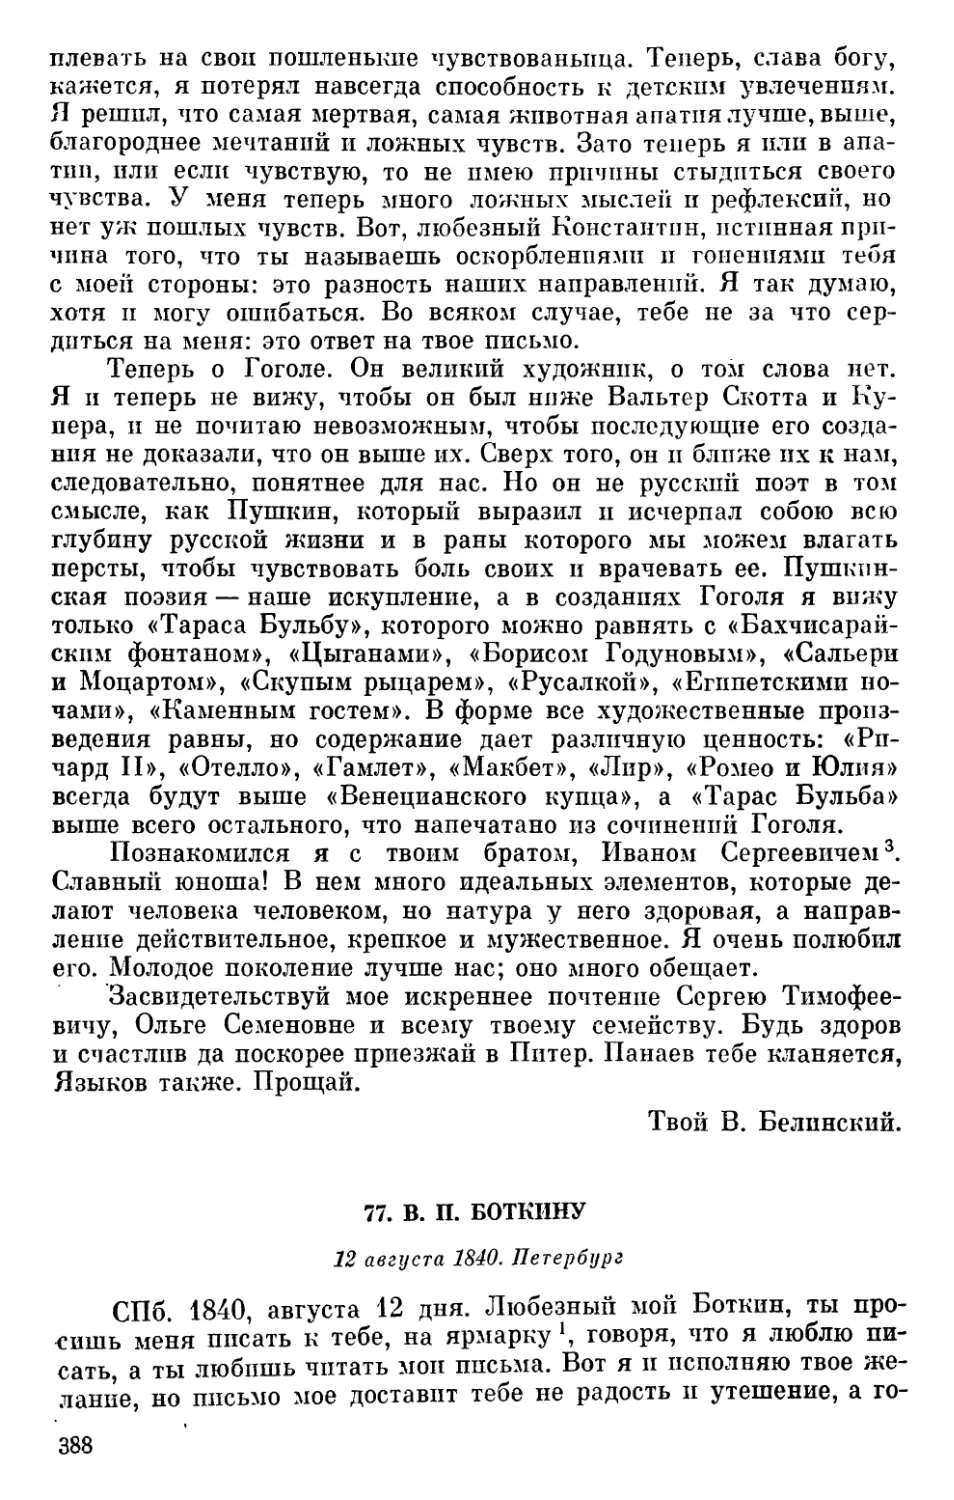 77. В. П. Боткину. 12 августа 1840